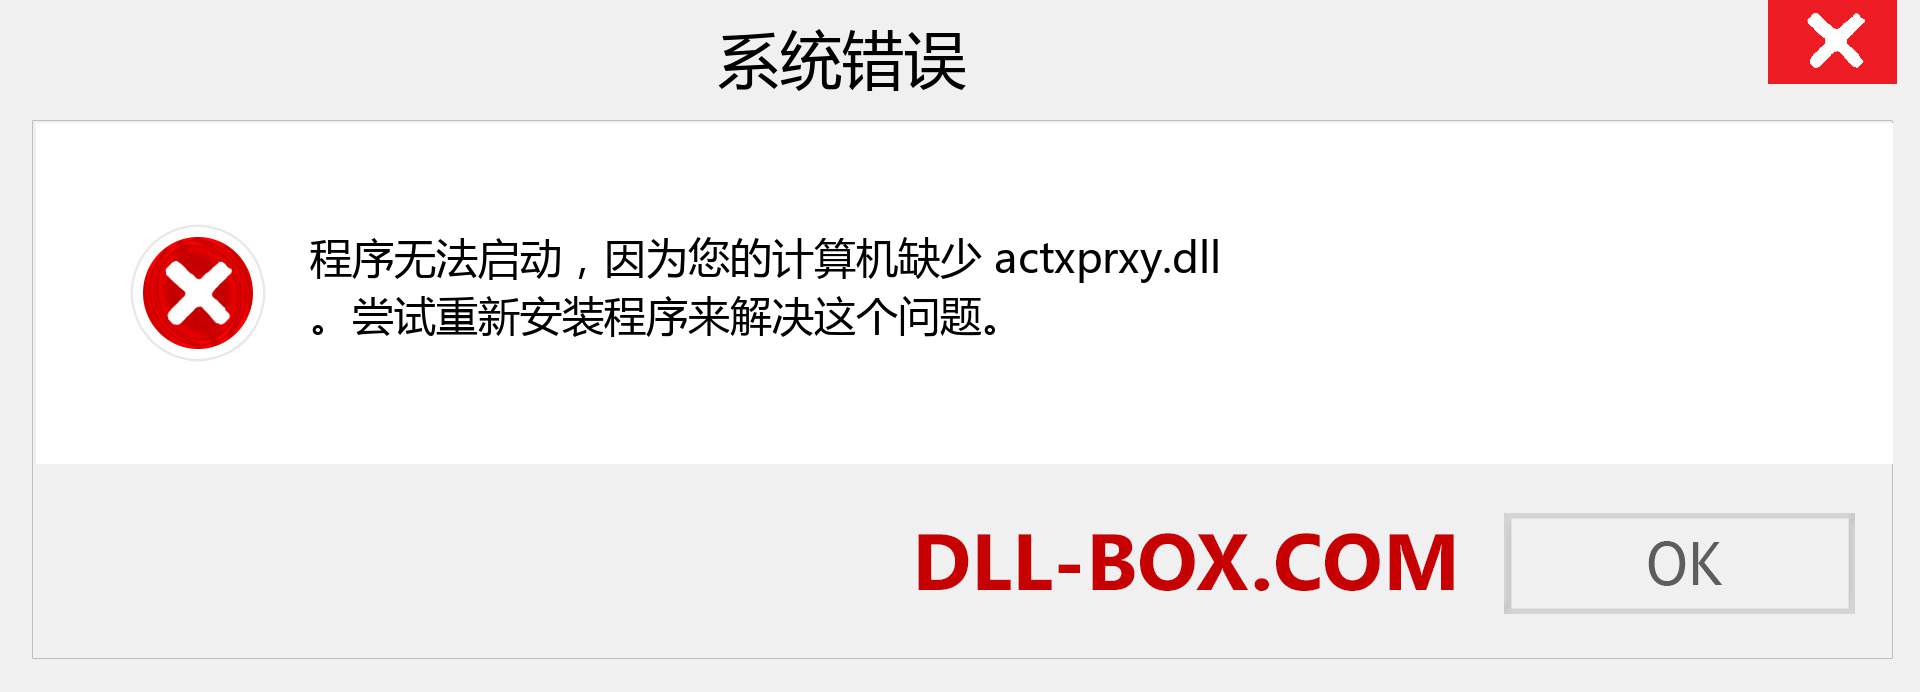 actxprxy.dll 文件丢失？。 适用于 Windows 7、8、10 的下载 - 修复 Windows、照片、图像上的 actxprxy dll 丢失错误